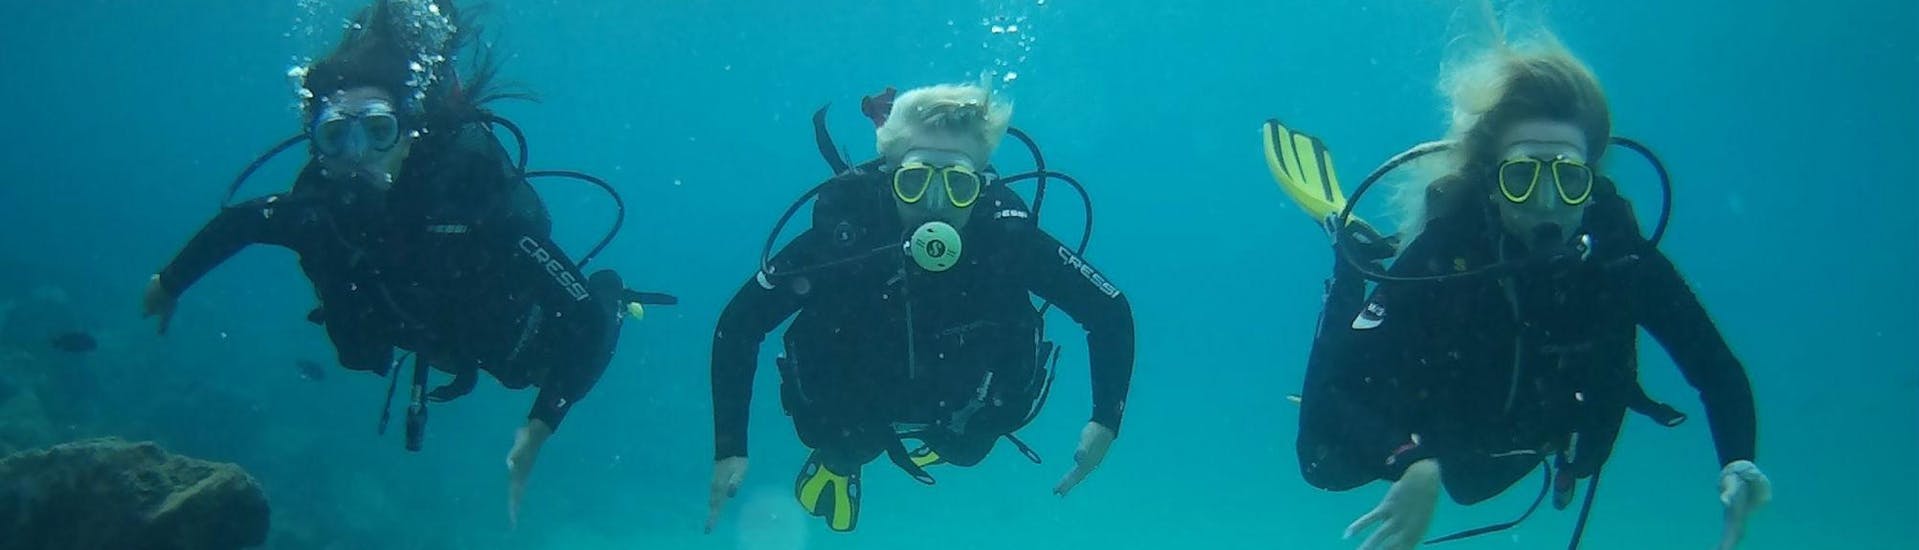 PADI/SSI Scuba Diver Course for Beginners in Lanzarote .